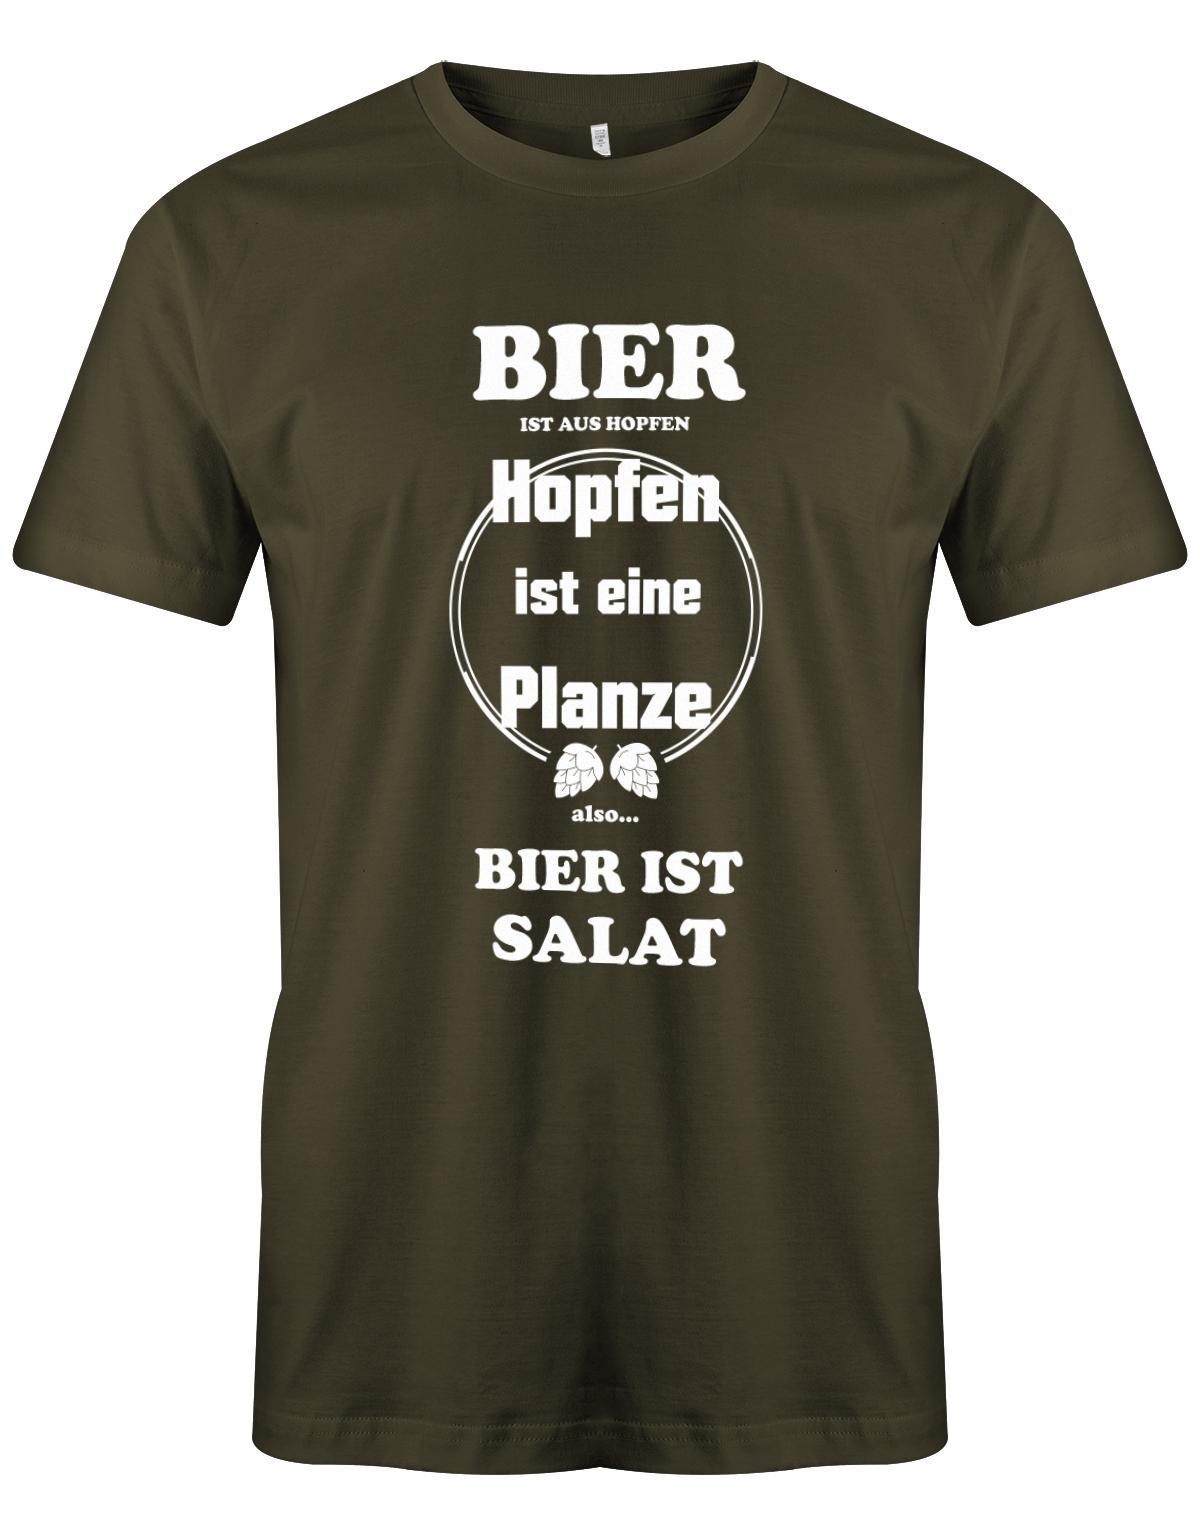 Bier-ist-aus-Hopfen-Hopfen-ist-eine-Pflanze-Bier-ist-Salat-herren-Shirt-Army